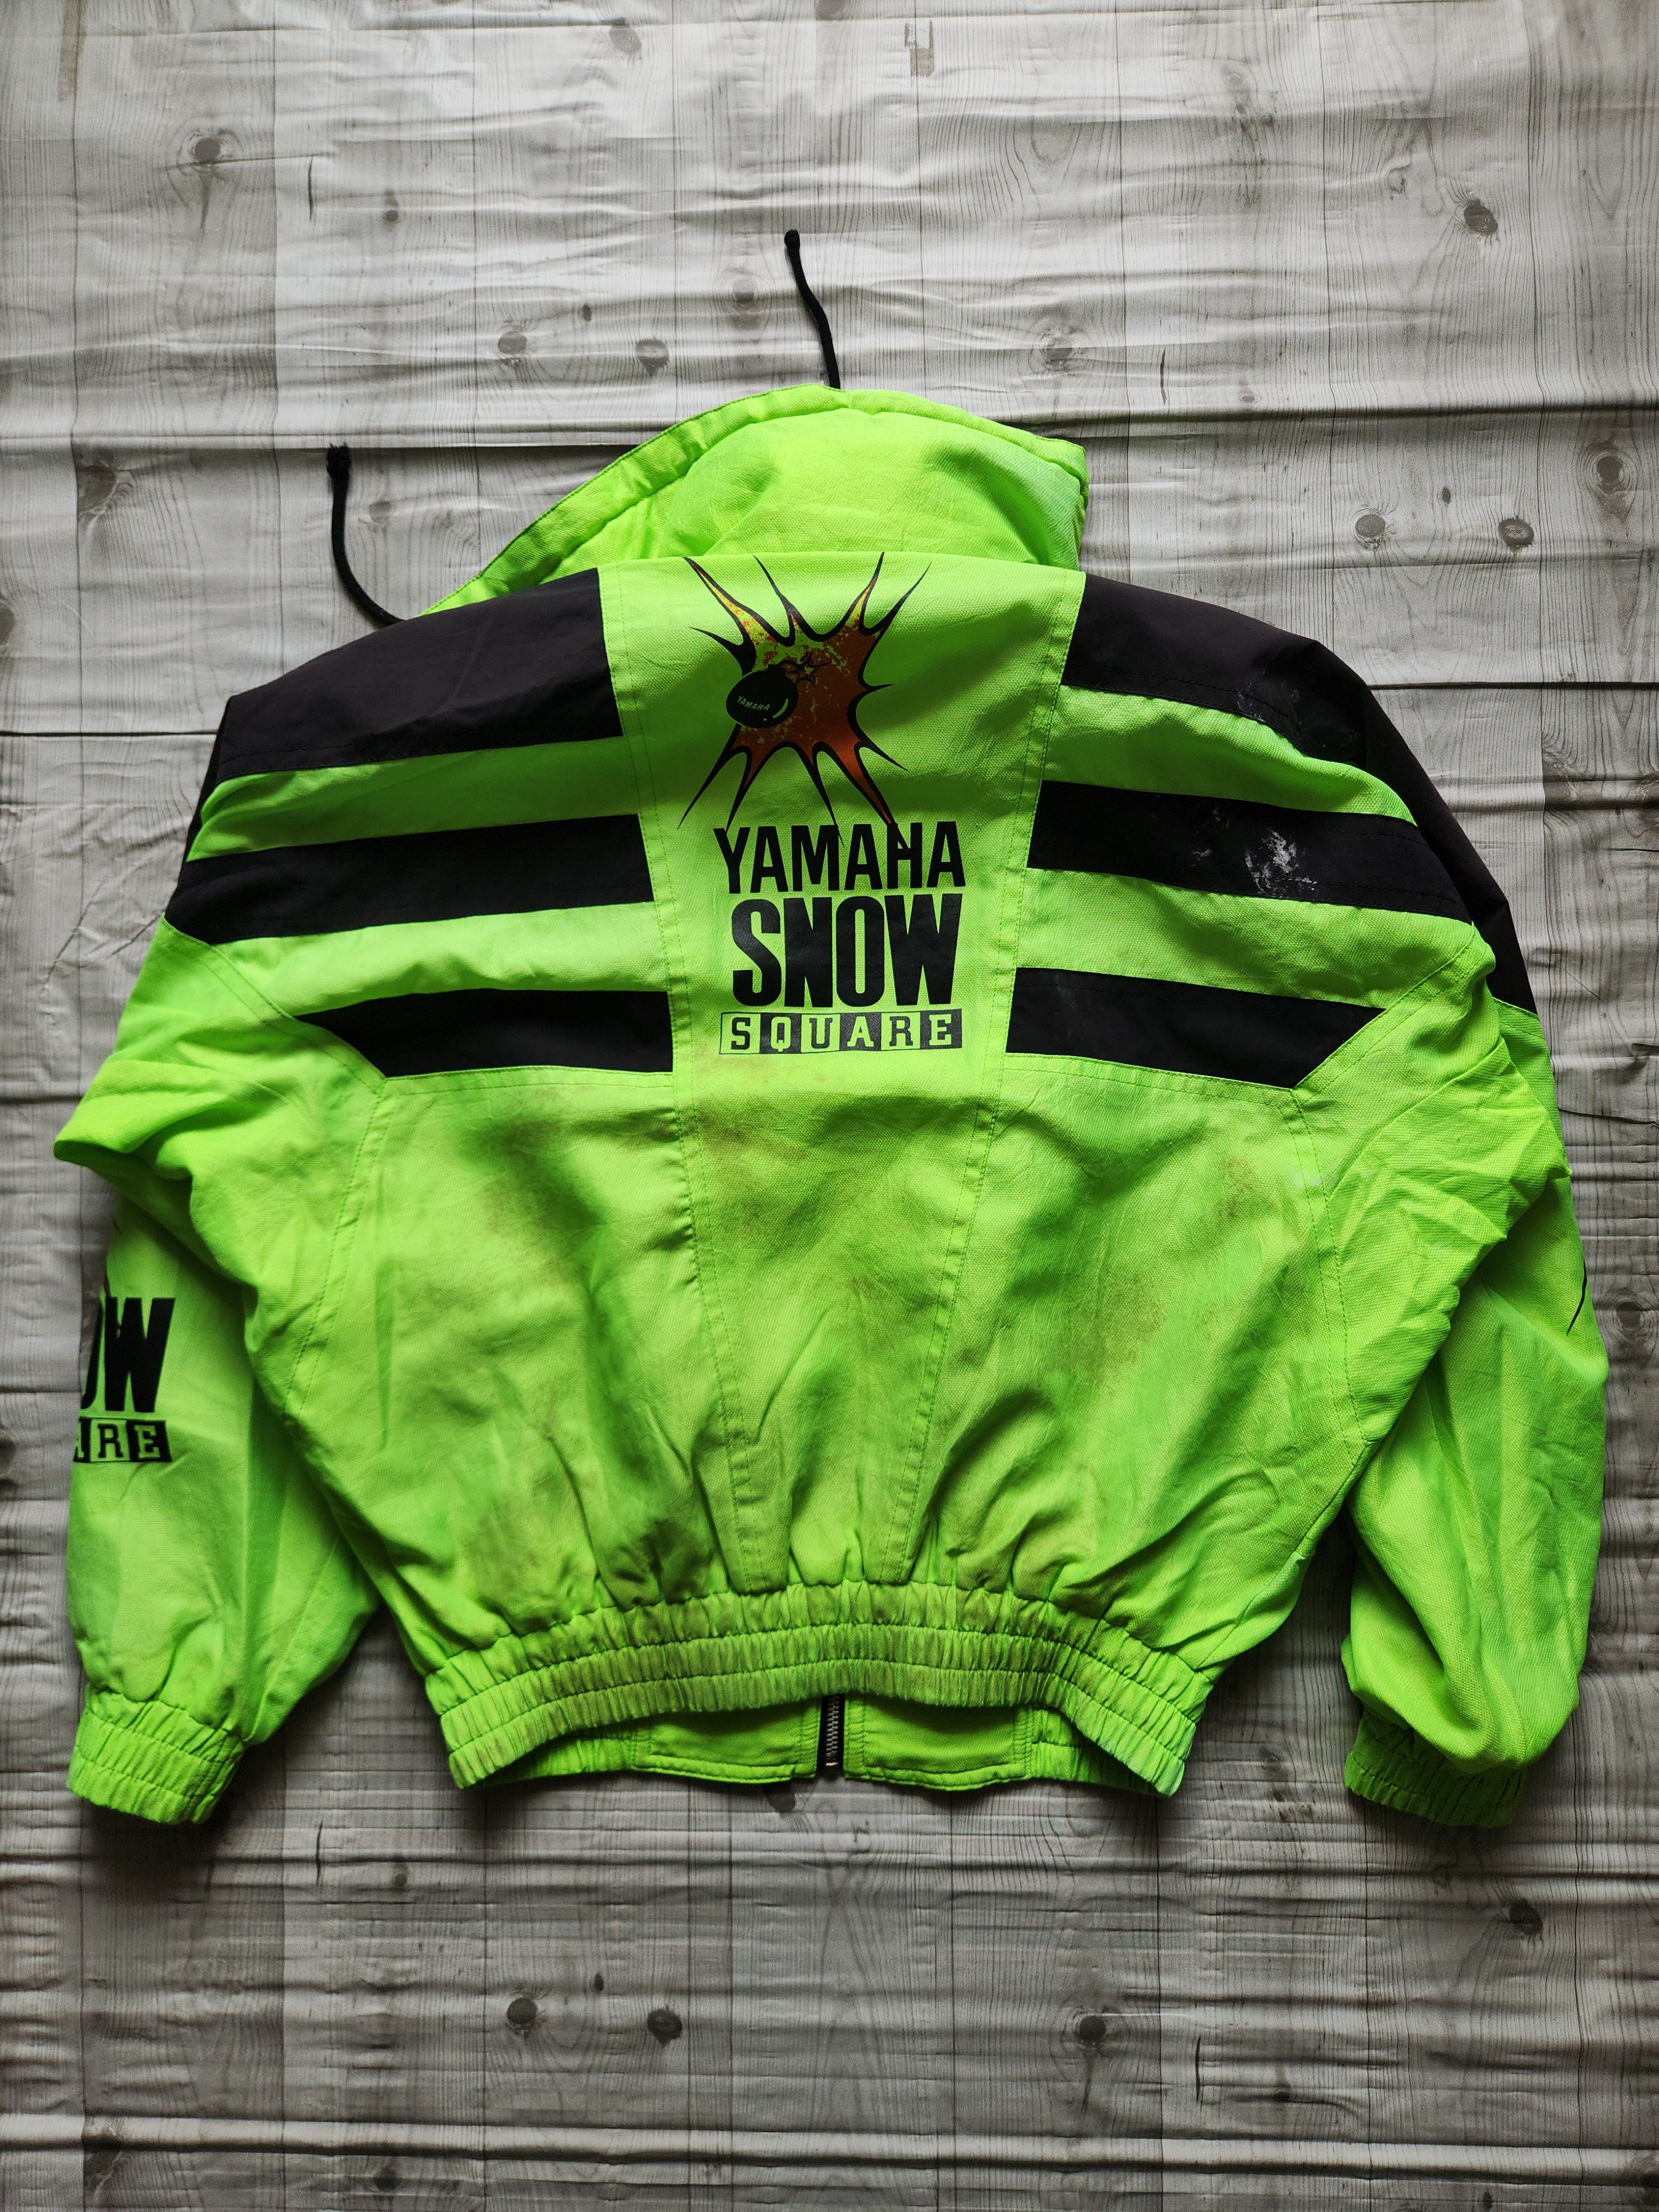 Yamaha - Yahama Snow Square Ski Jacket - 20